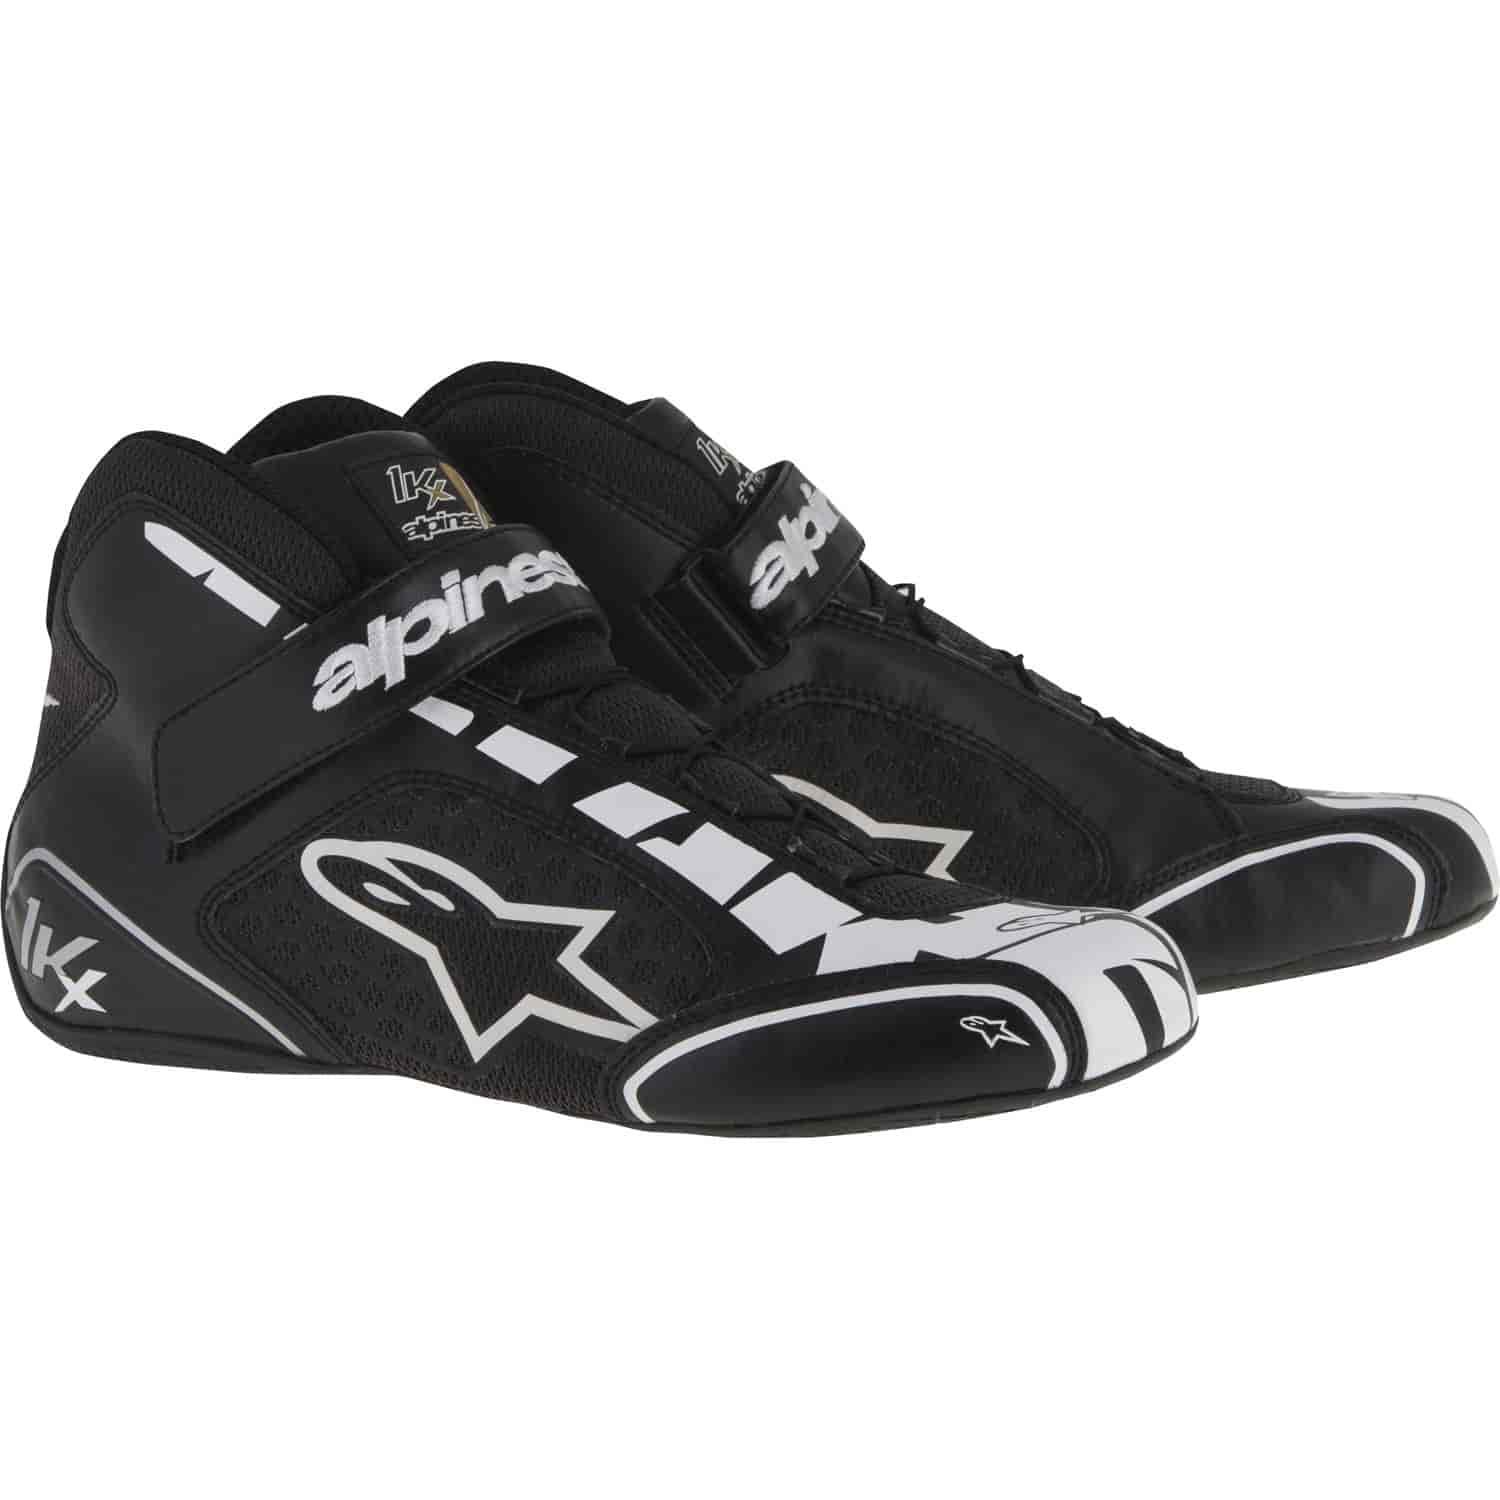 Tech 1-KX Shoes Black/White